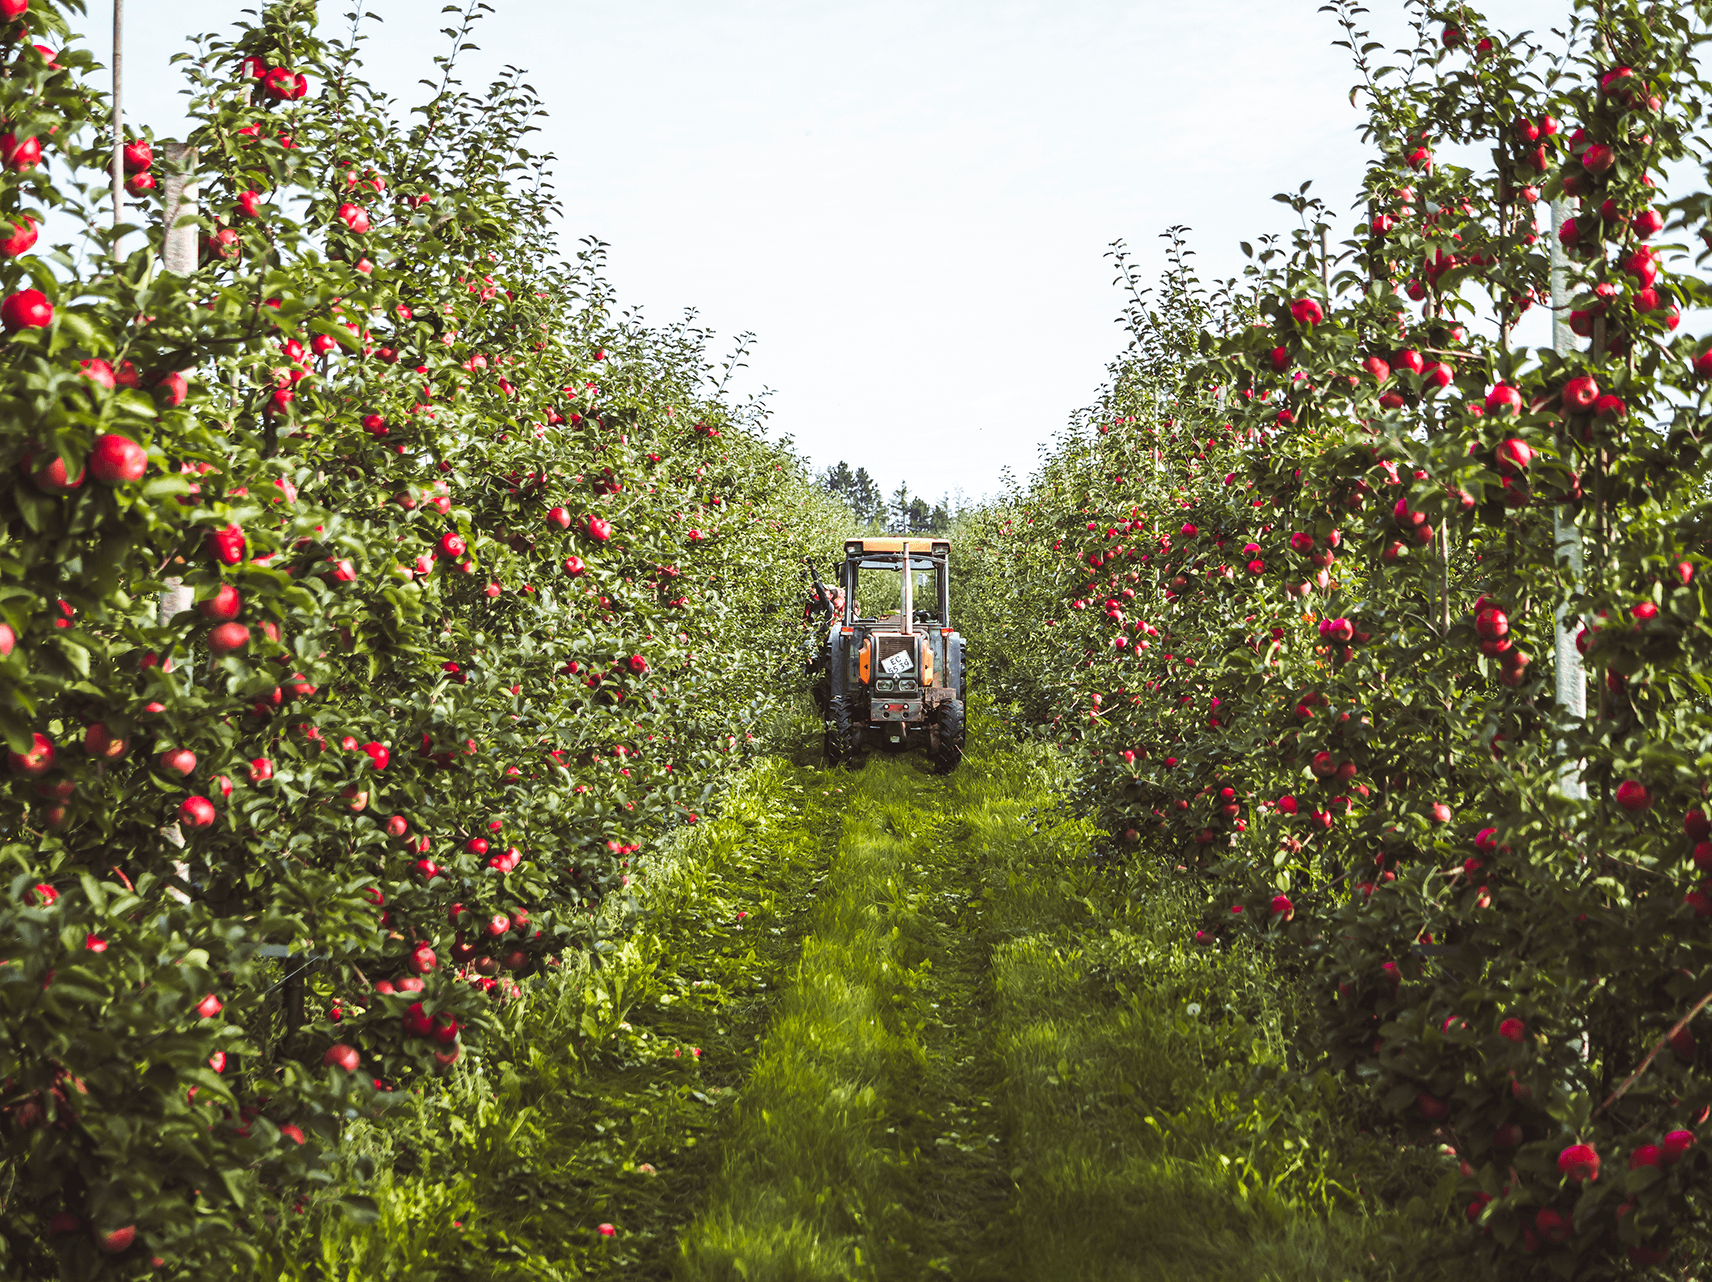 Traktor i æbleplantage ved høst af danske æbler